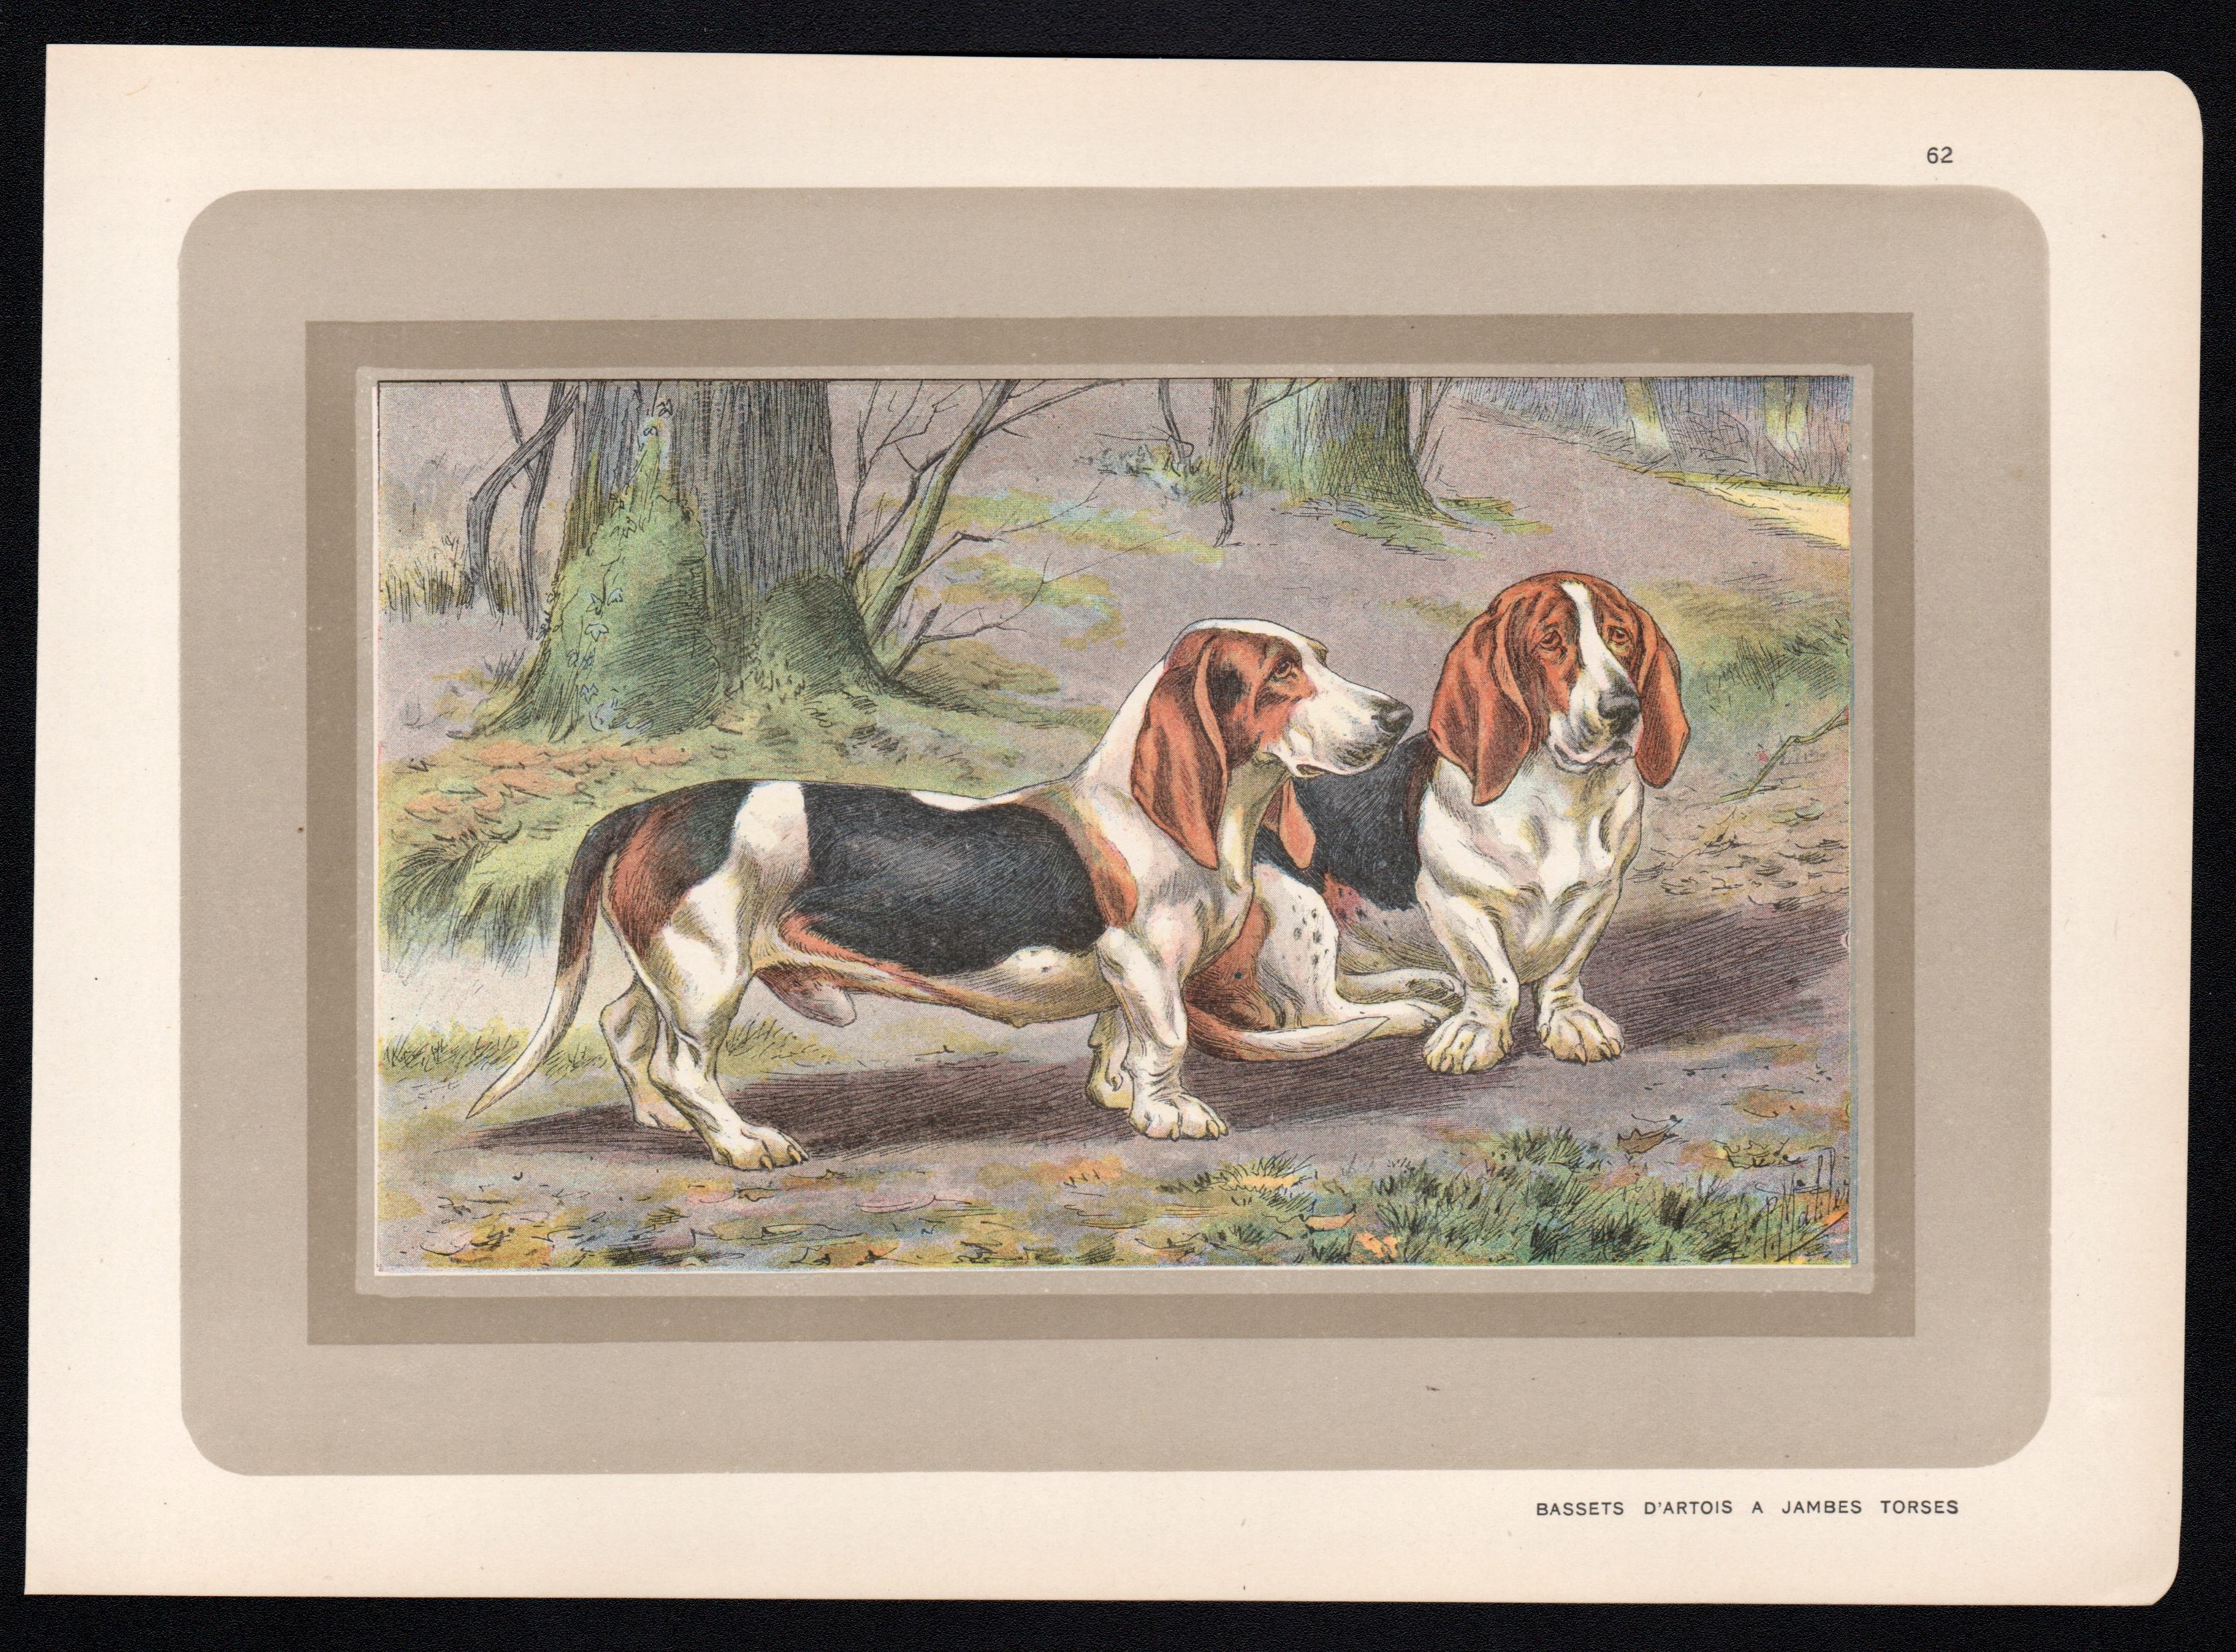 Bassets D'Artois a Jambes Torses, impression chromolithographie de chien de chasse français des années 1930 - Print de P. Mahler